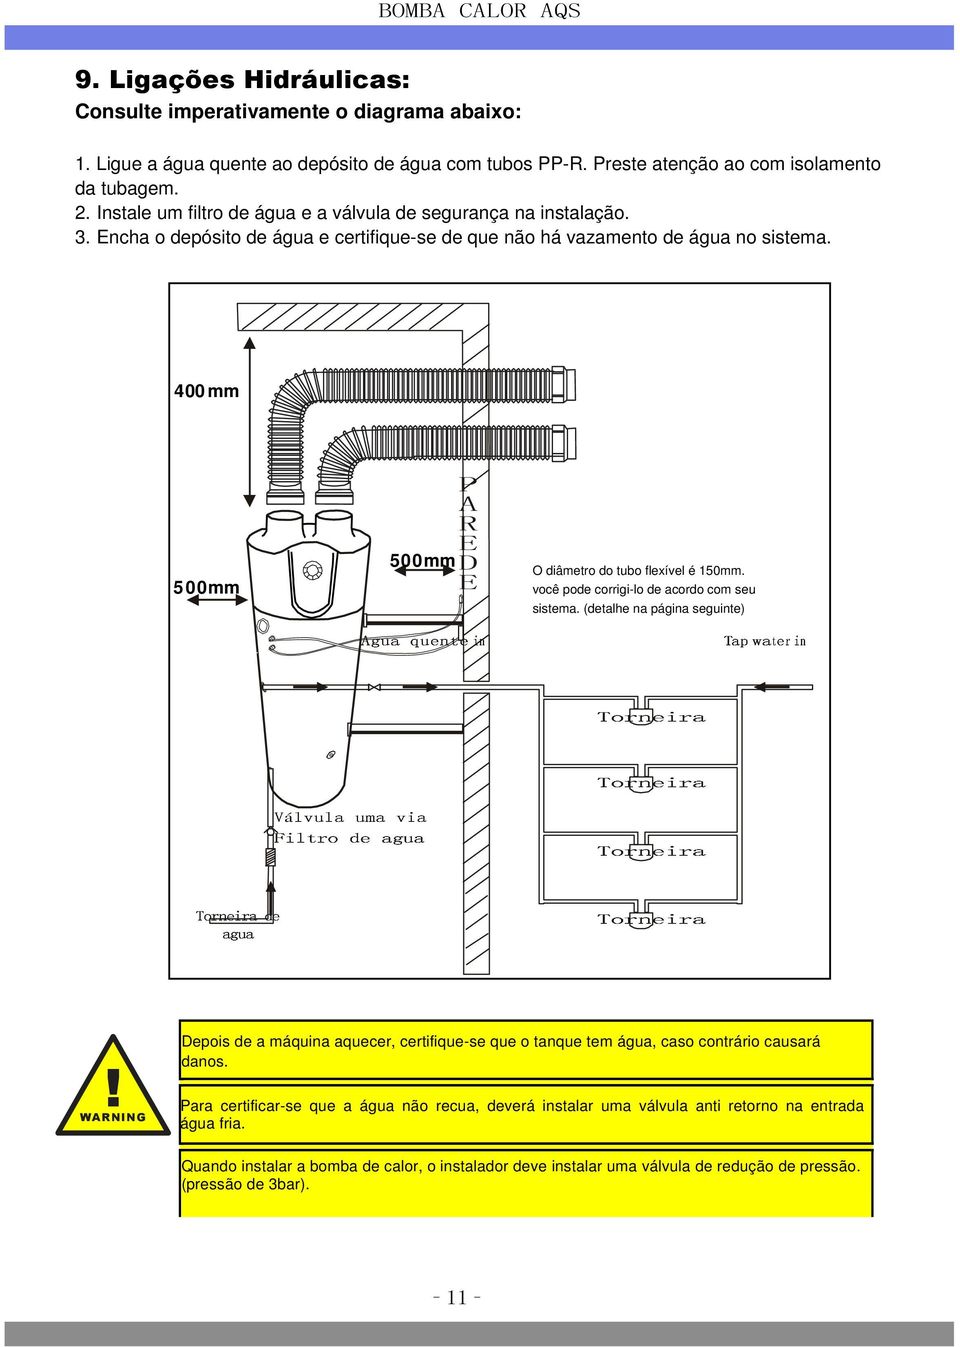 400 mm P Agua quente A in R E 500mm D 500mm E Válvula Filtro de uma agua via Torneira agua de O diâmetro Torneira Tap wate r in do tubo flexível é 150mm.